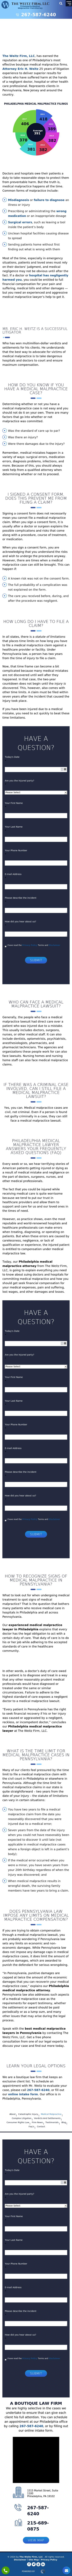 The Weitz Firm, LLC - Philadelphia PA Lawyers